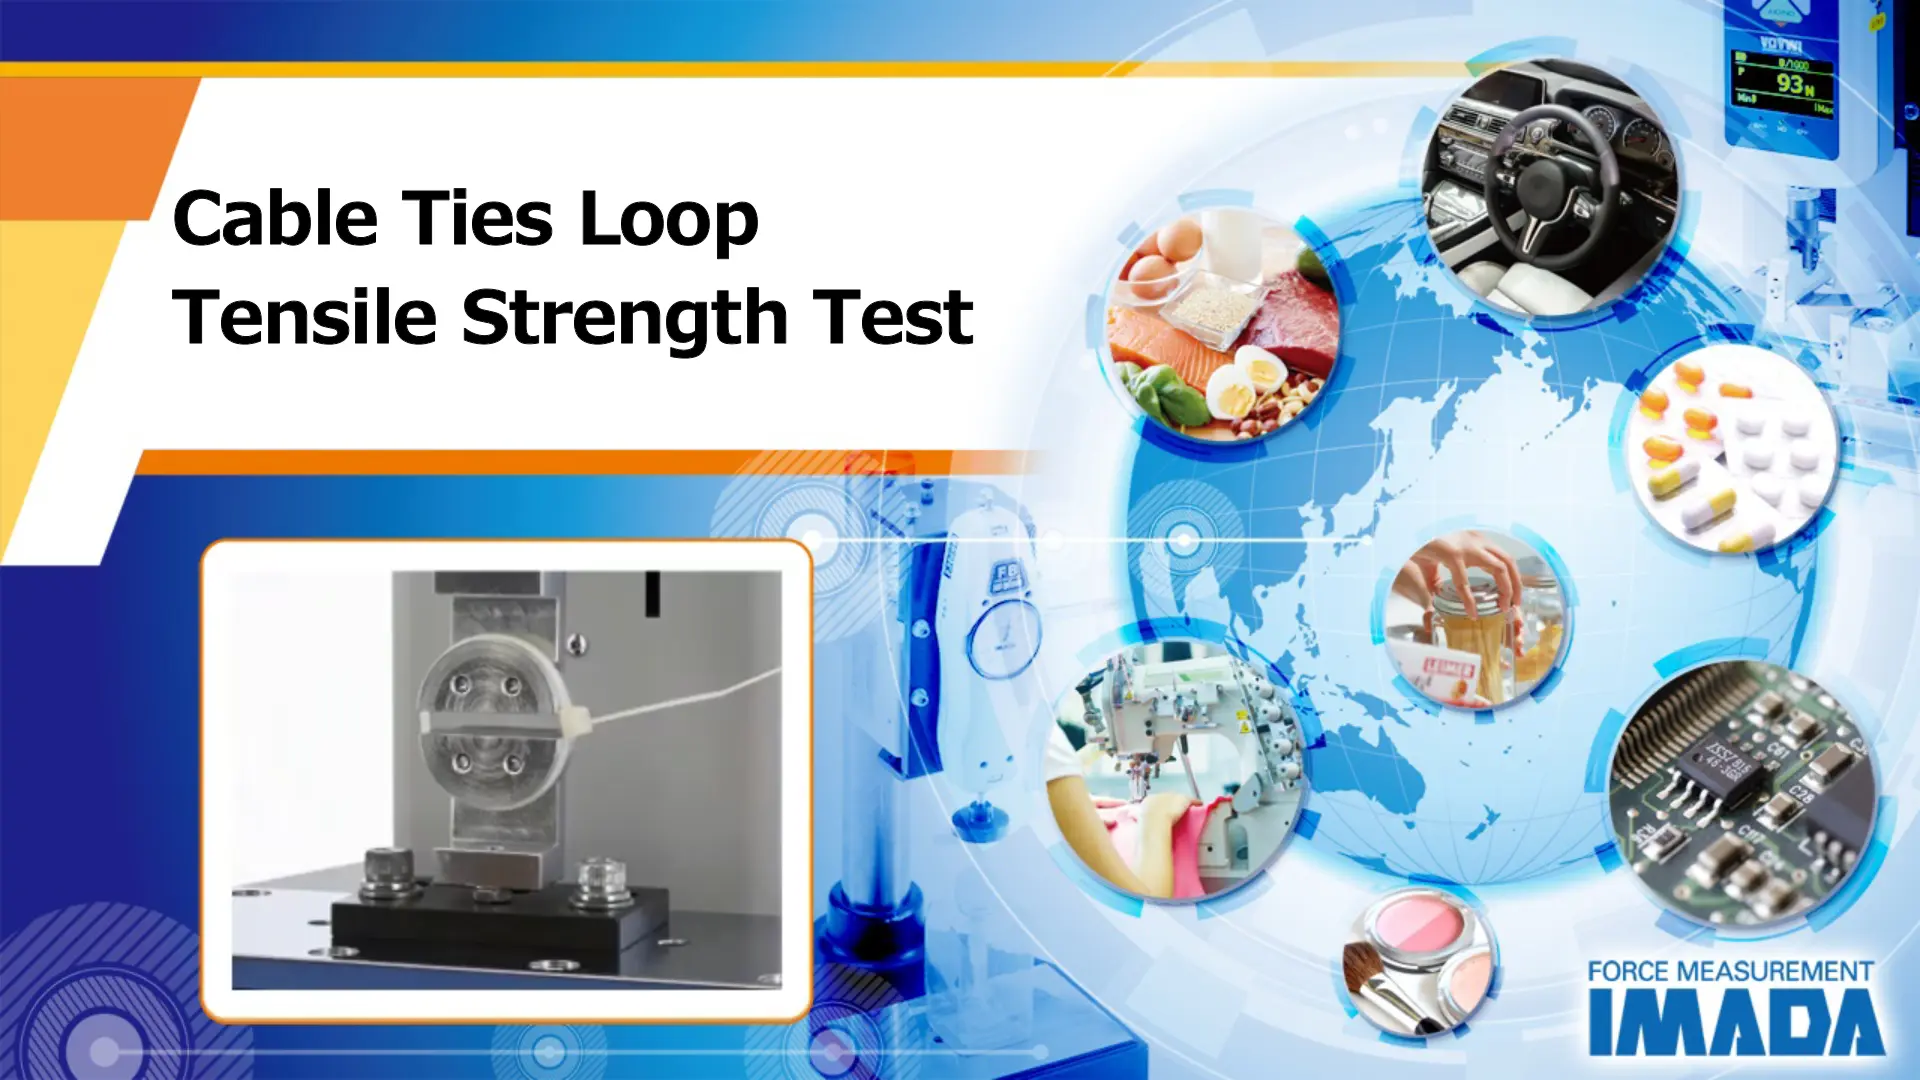 Cable ties loop tensile strength test